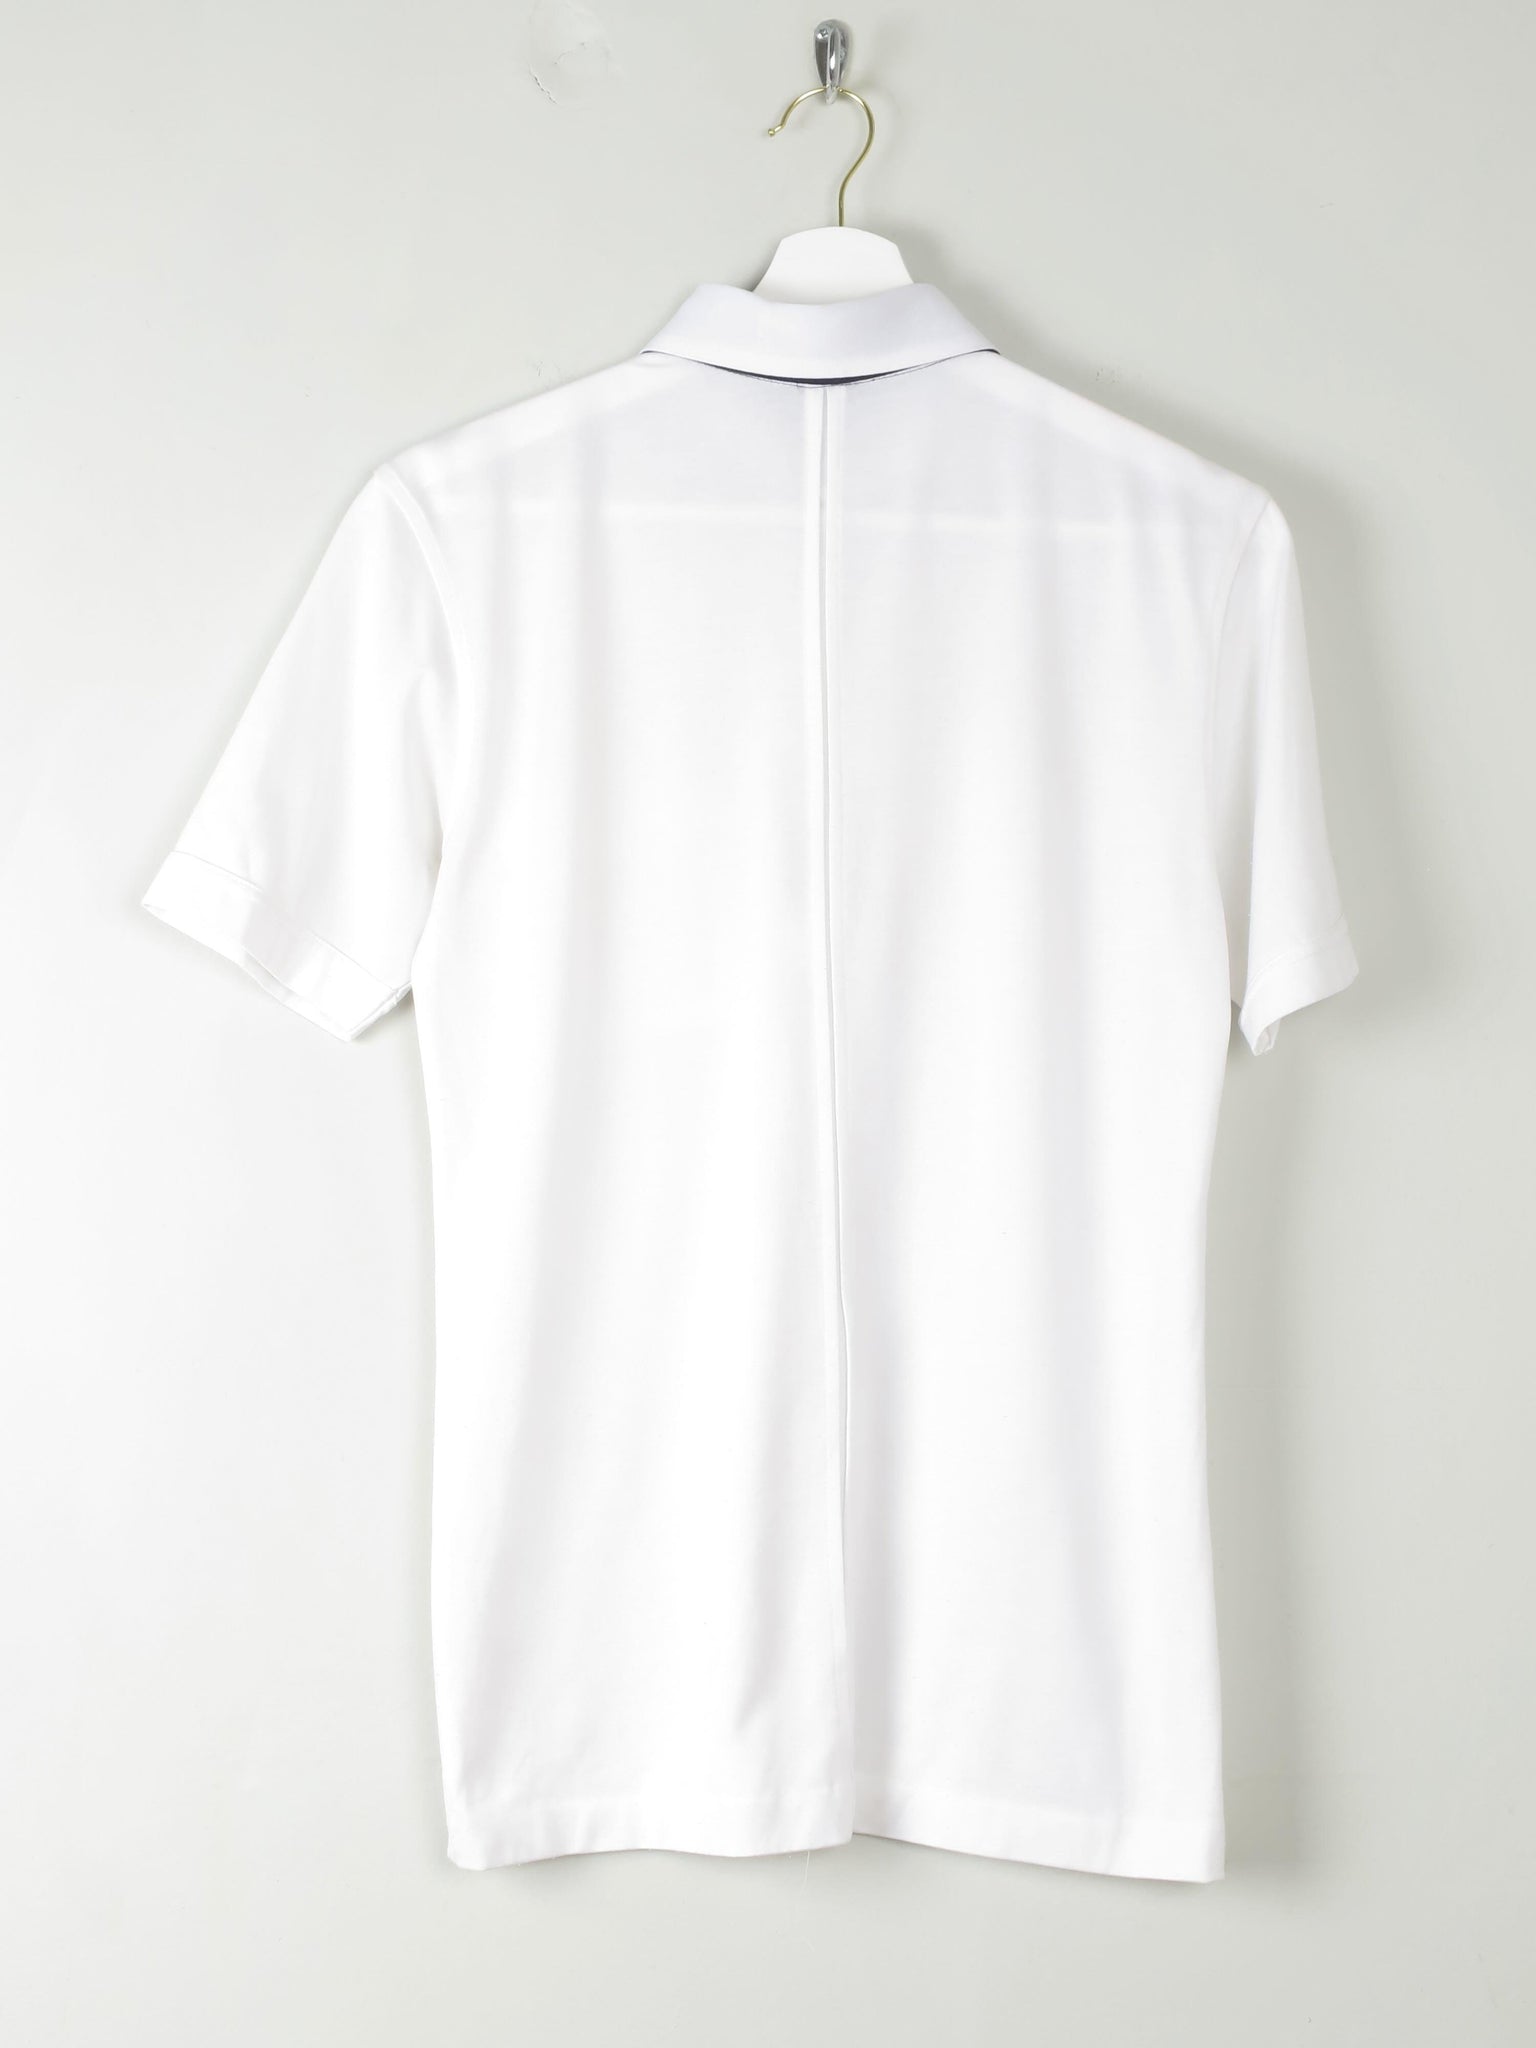 Men's White Vintage Shirt 1970s S - The Harlequin